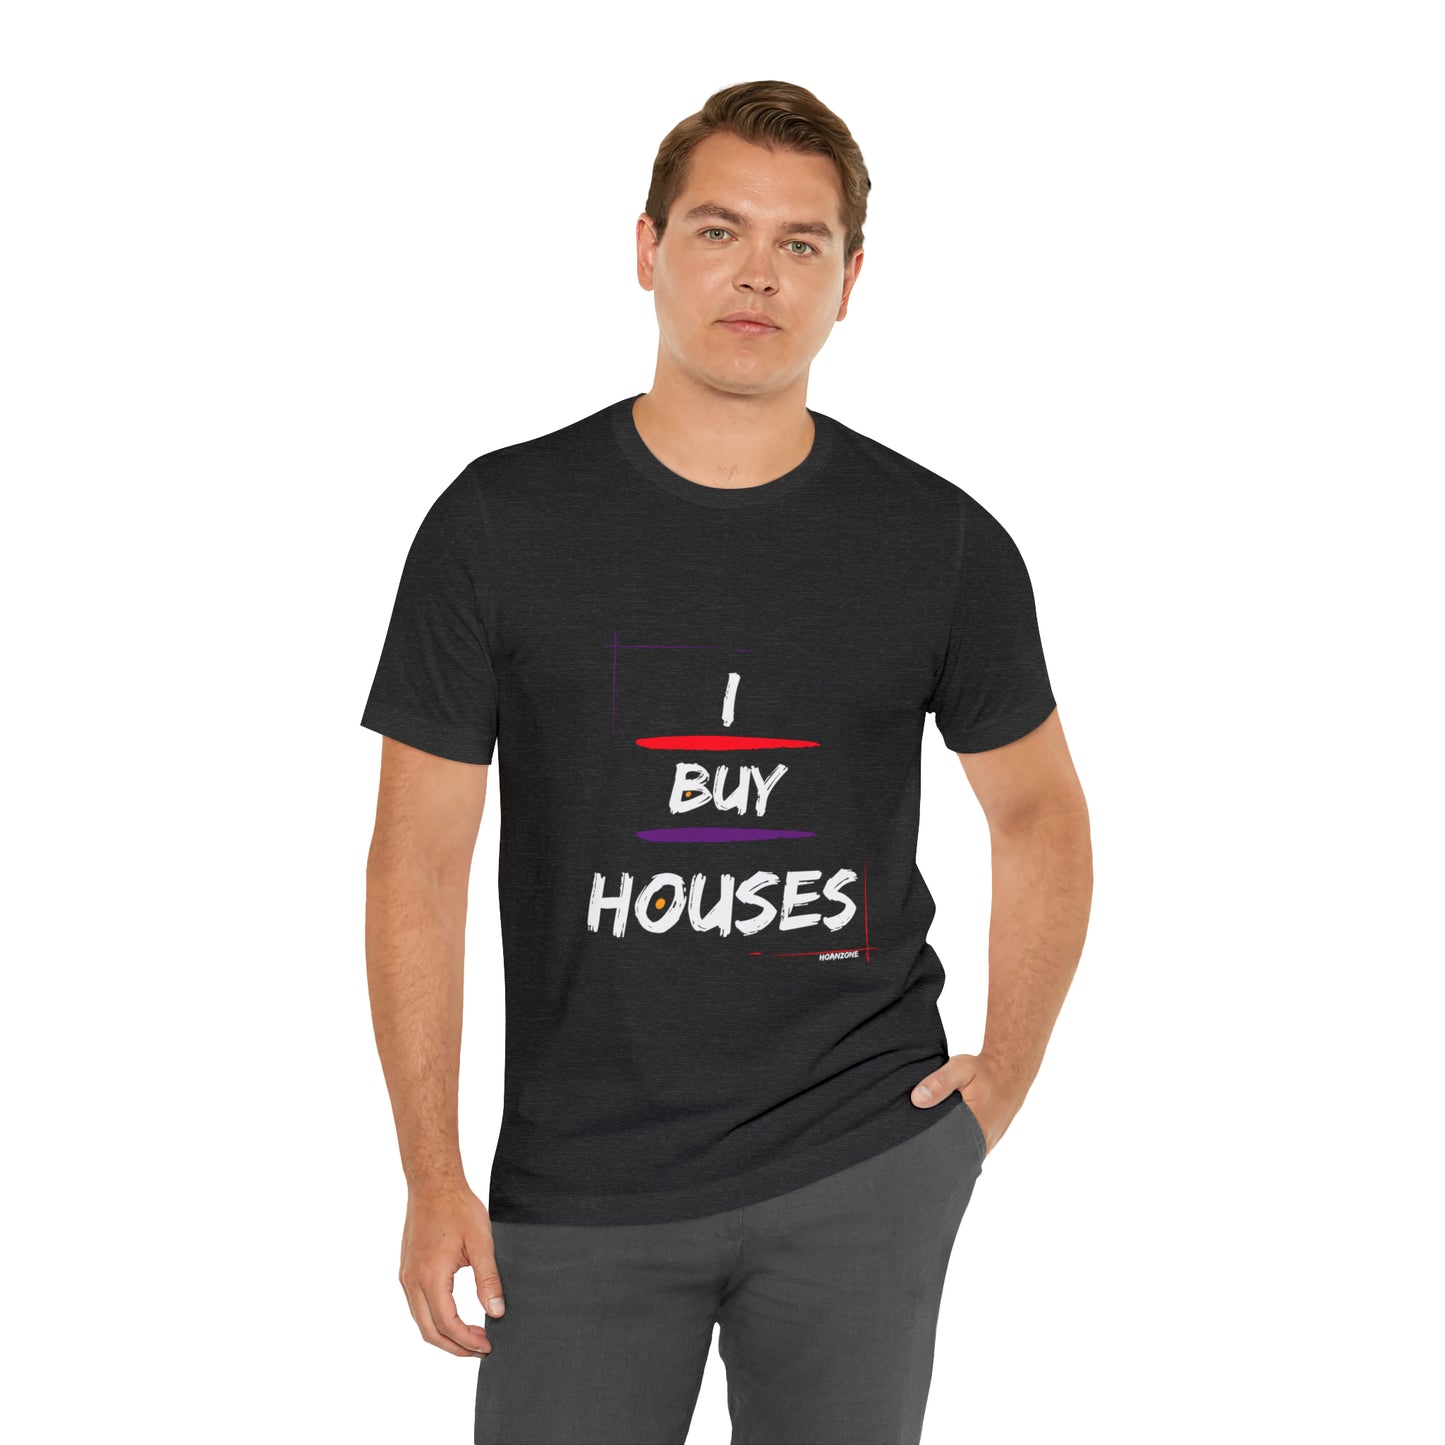 I Buy Houses